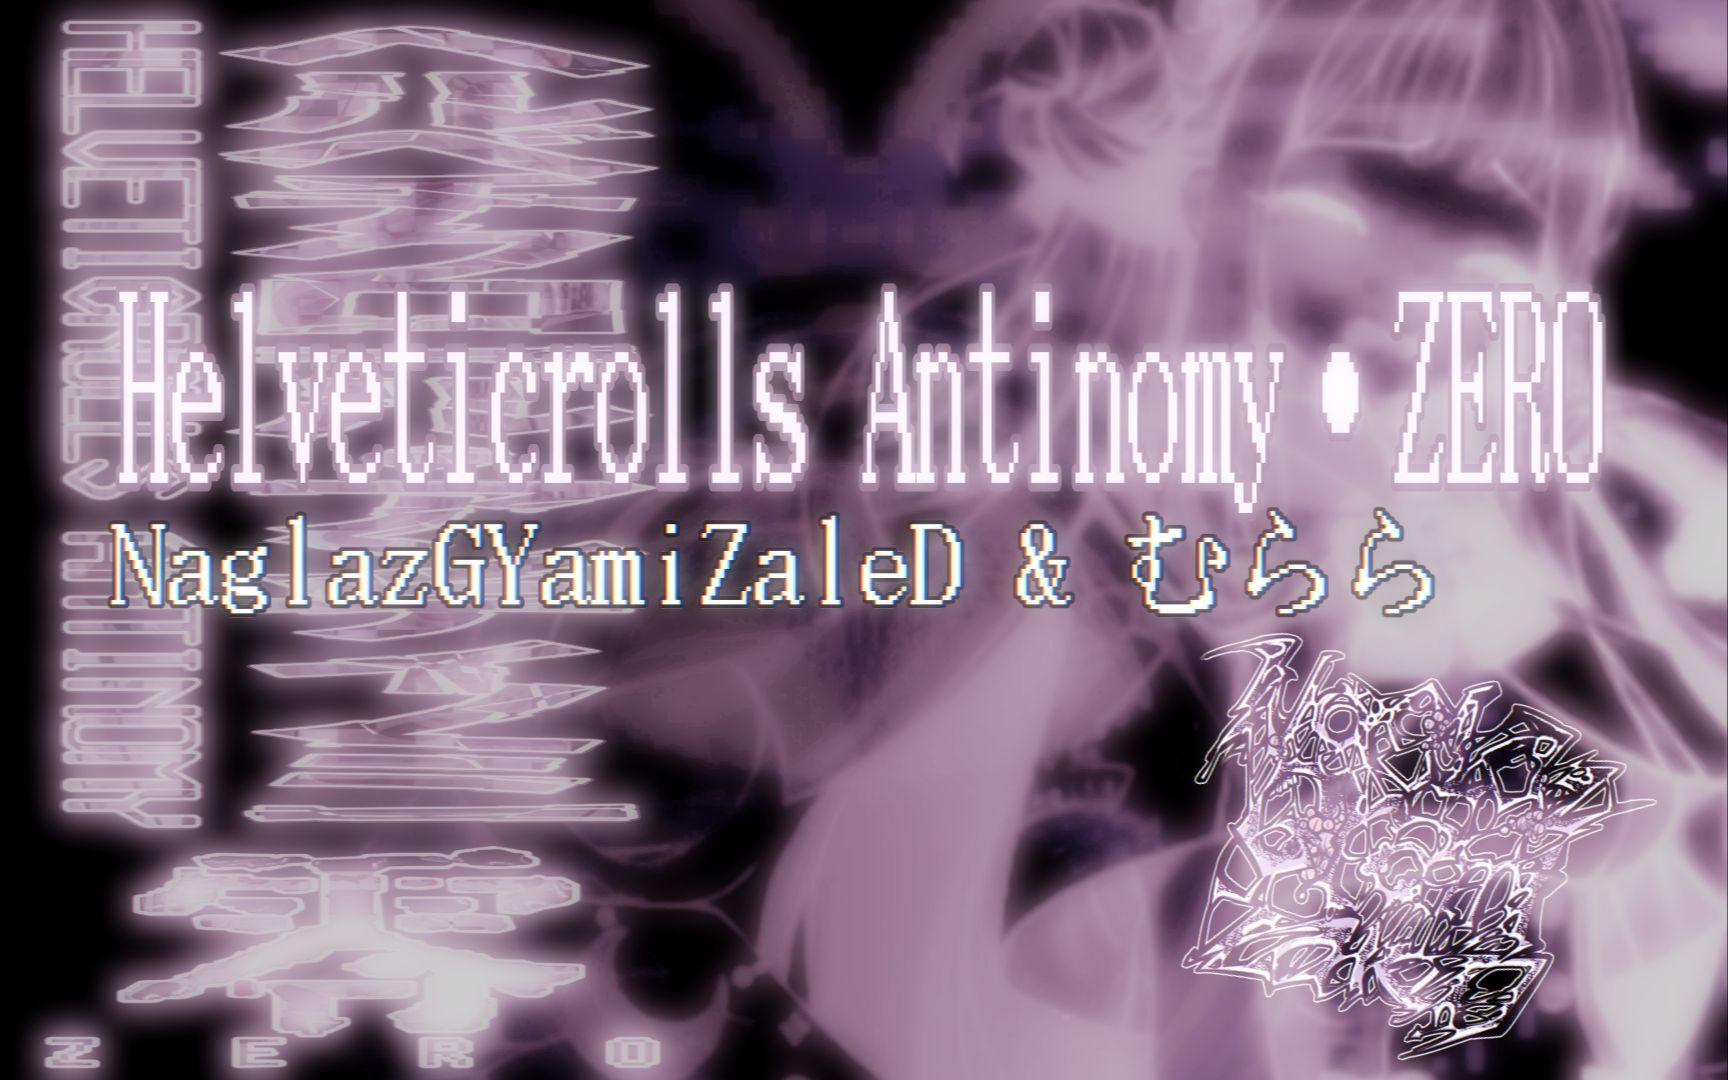 【碧蓝档案1.5周年贺曲/speedcore】Helveticrolls Antinomy · ZERO